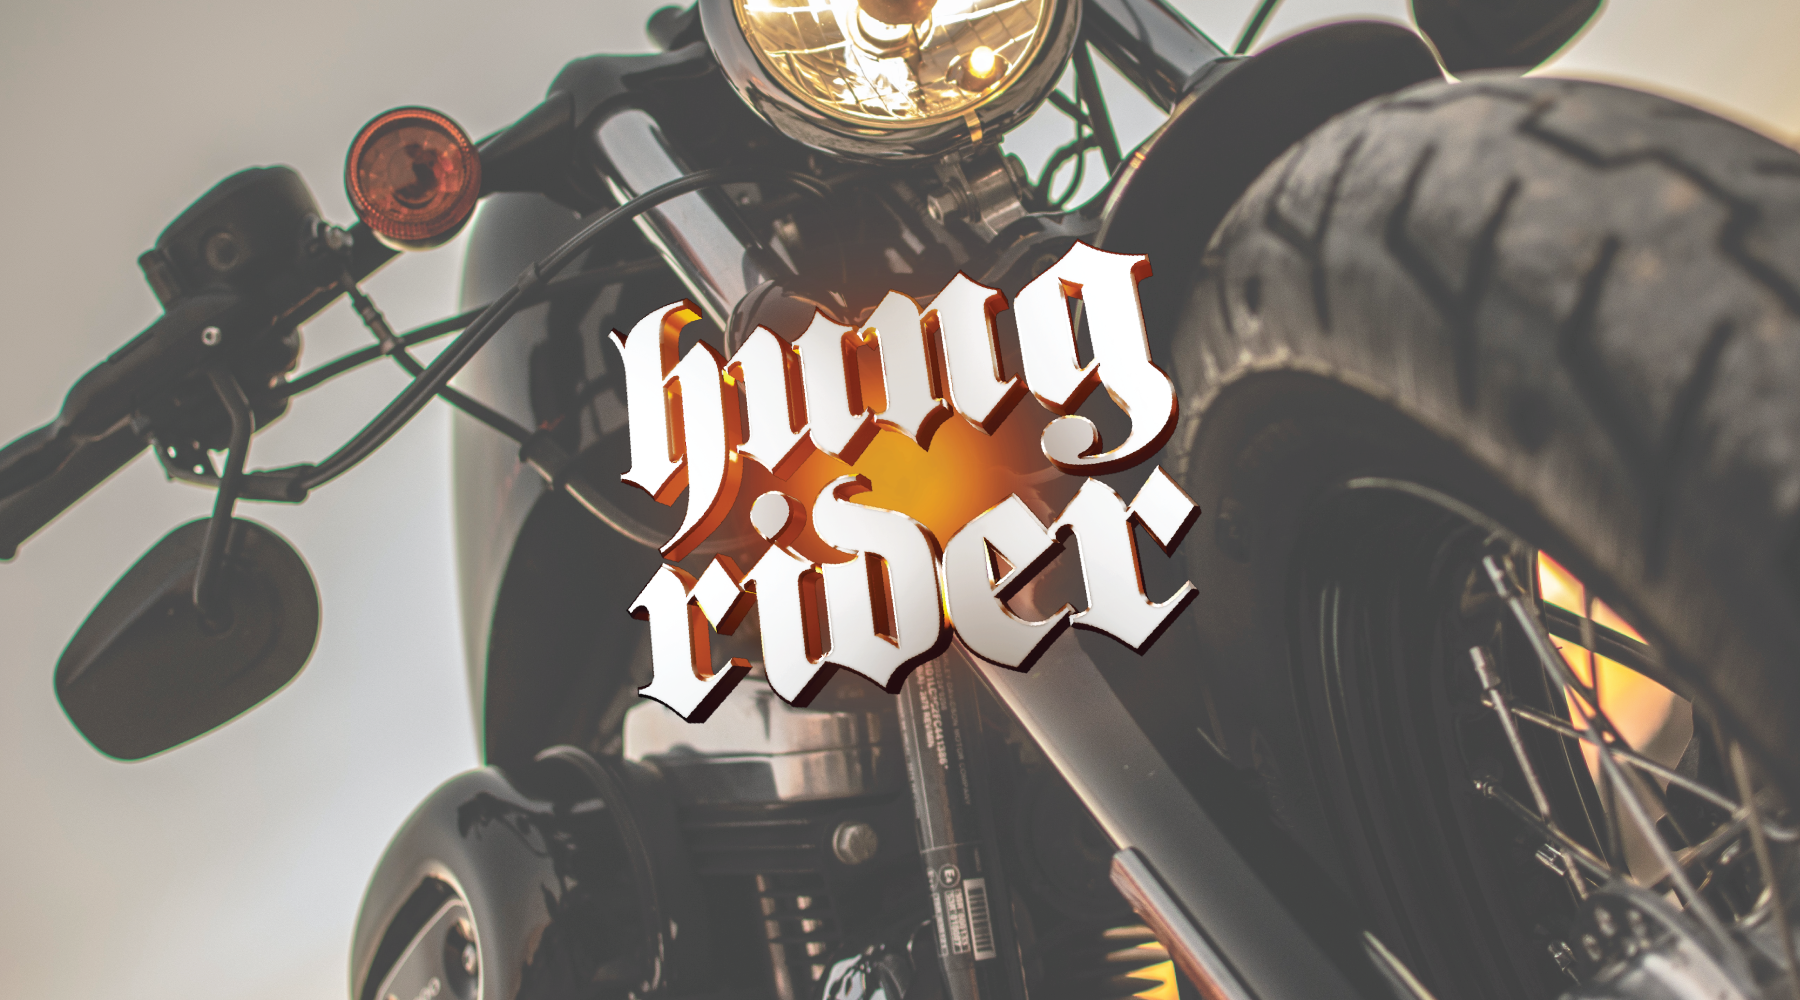 Hung Rider